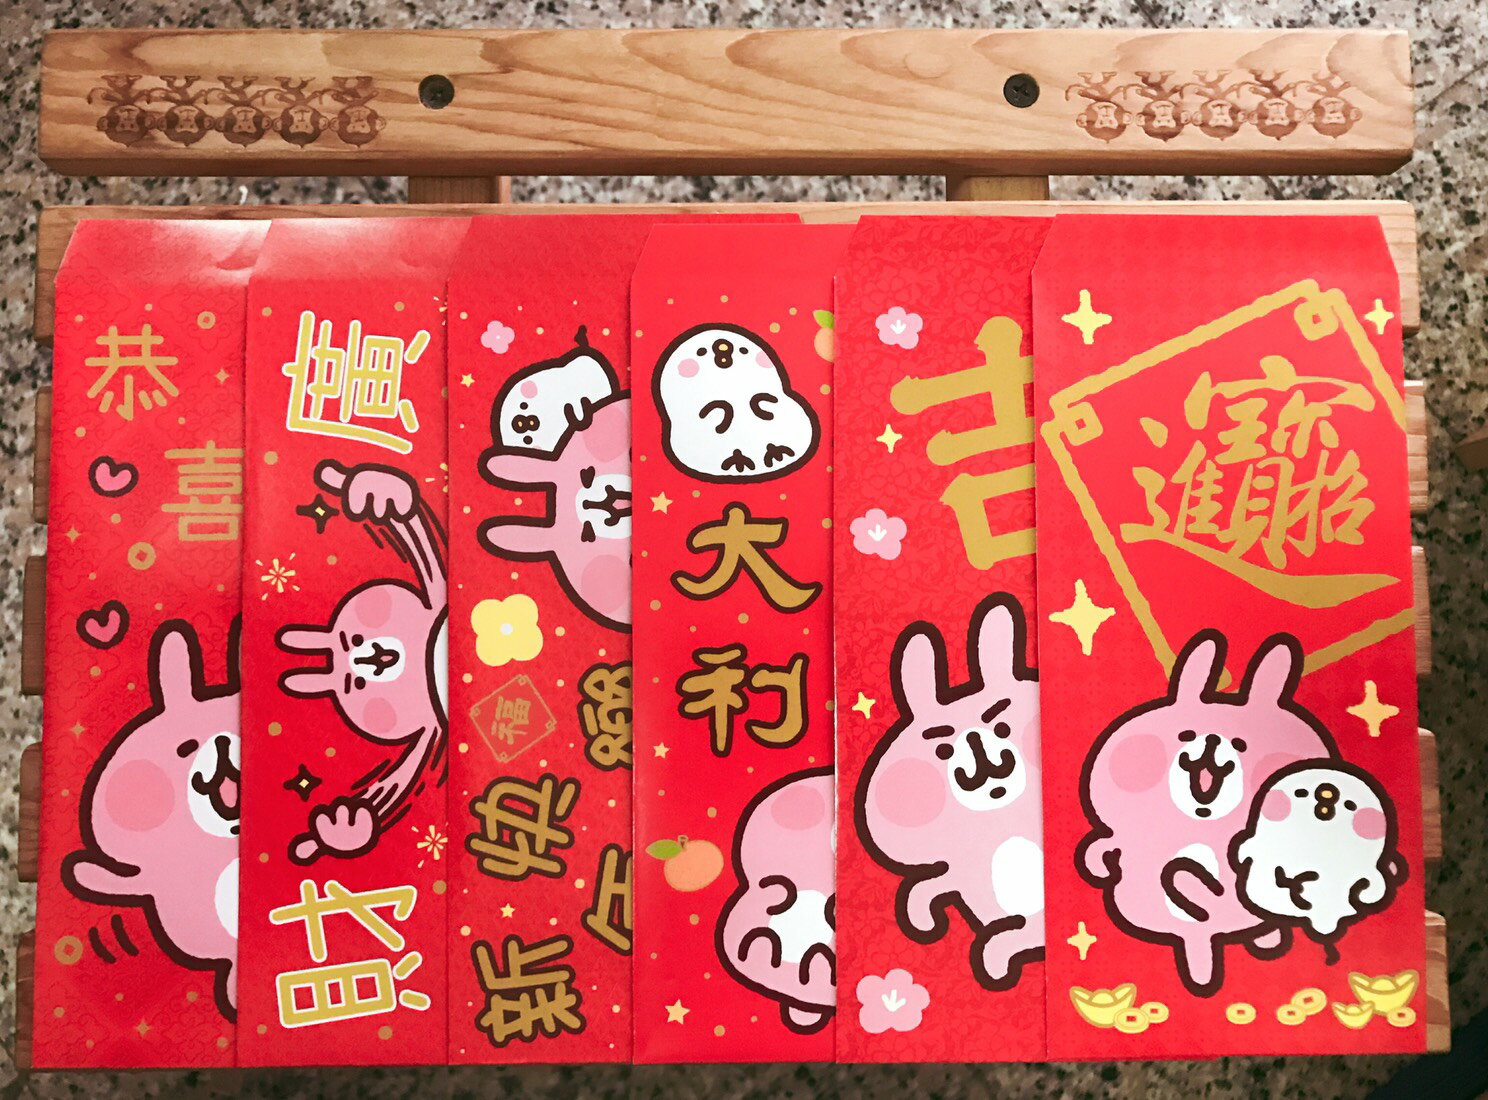 【晴晴百寶盒】6入拉拉熊 卡娜赫拉 今年爆款紅包袋 可愛 大方 爆紅 中式紅包 萌萌紅包袋 A901